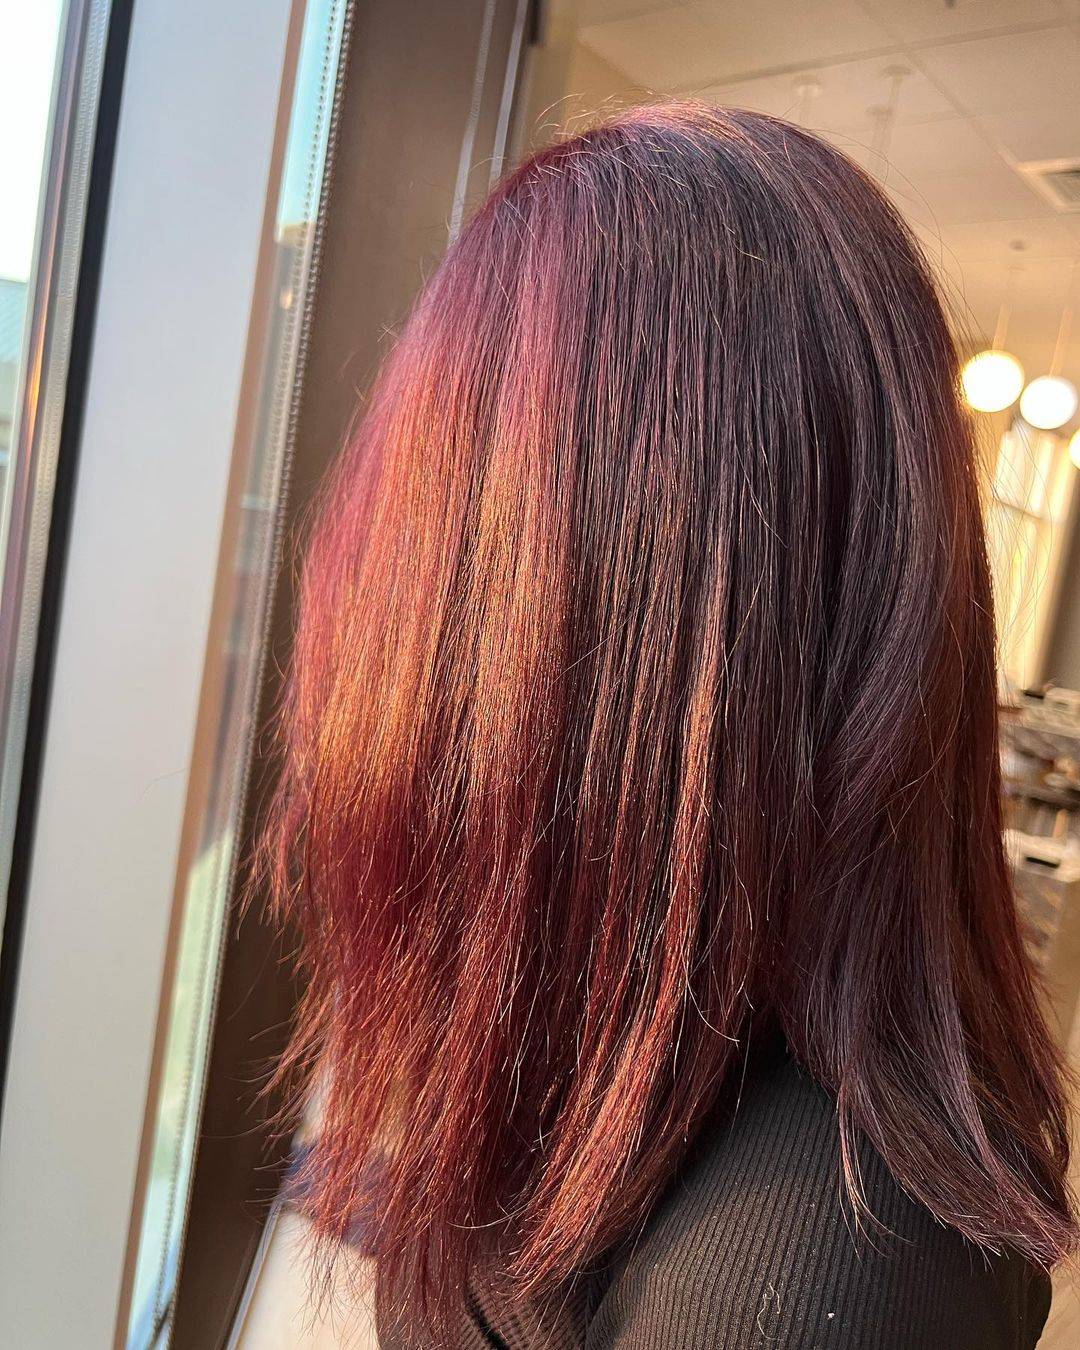 Burgundy hair color 306 burgundy hair color | burgundy hair color for women | burgundy hair color highlights Burgundy Hair Color